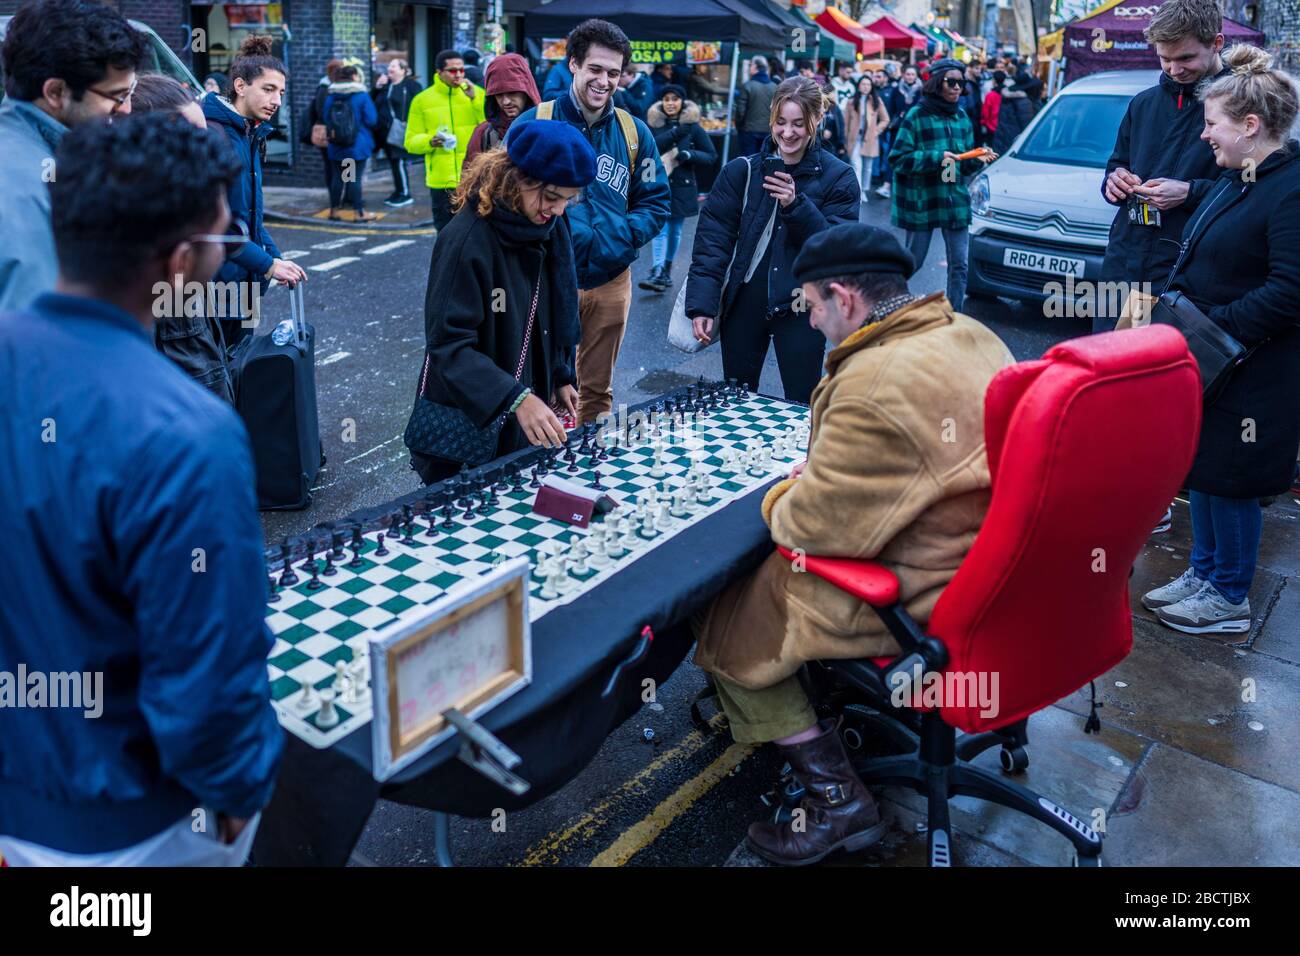 London Street Chess - un joueur d'échecs joue jusqu'à 4 matches simultanés avec les touristes et les passants dans le célèbre marché du dimanche Brick Lane de Londres Banque D'Images